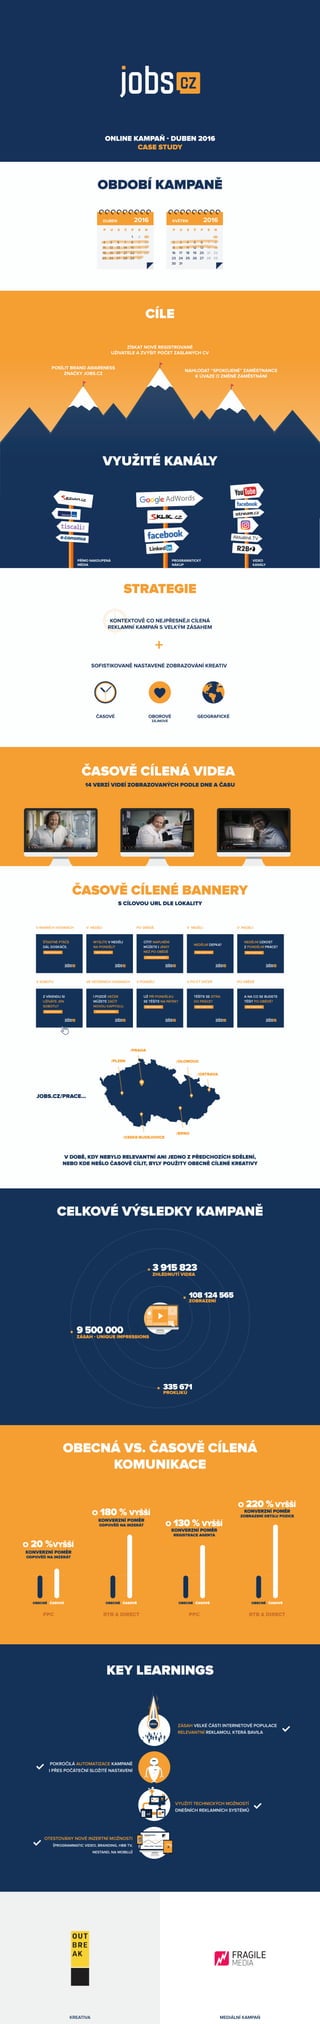 Case study: jobs.cz